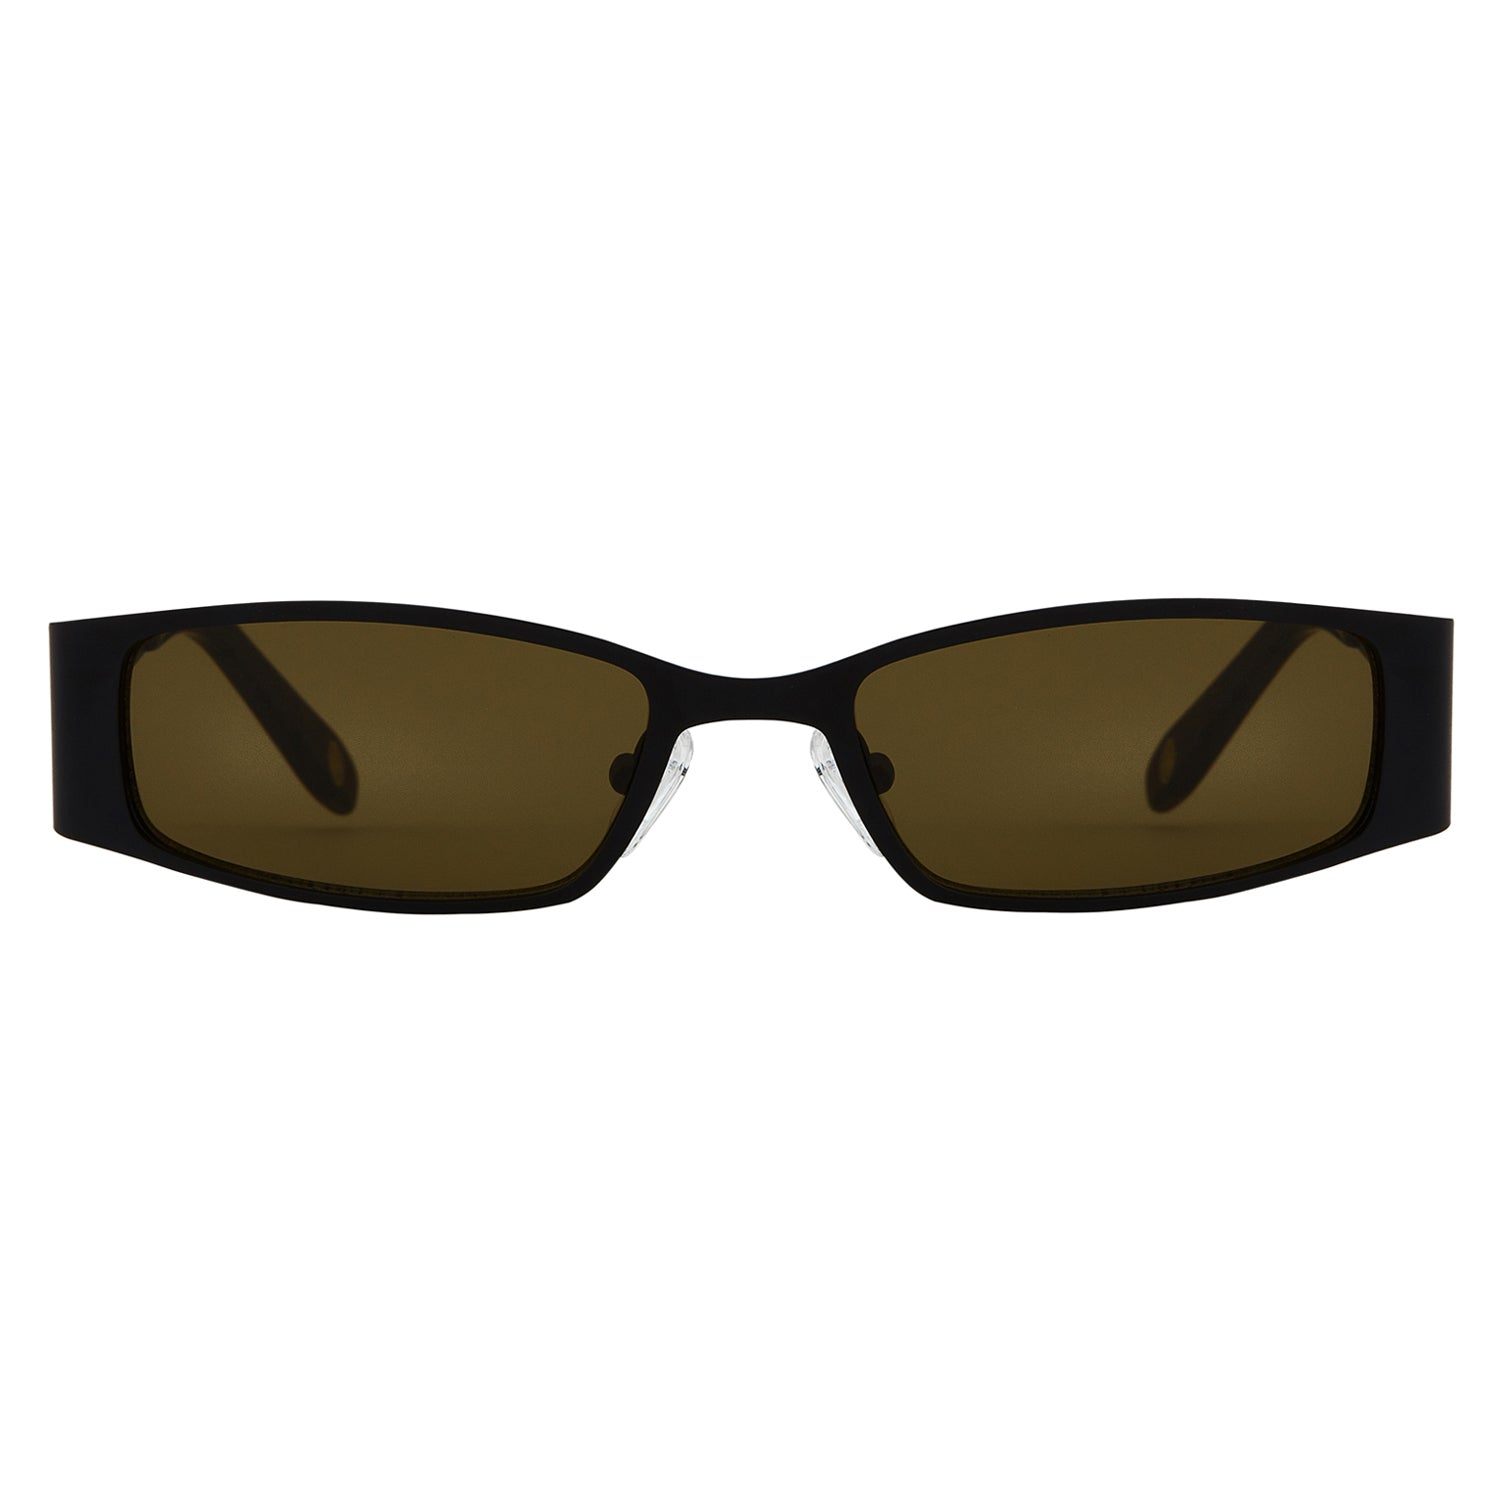 Mokki Slim Boss sunglasses in brown